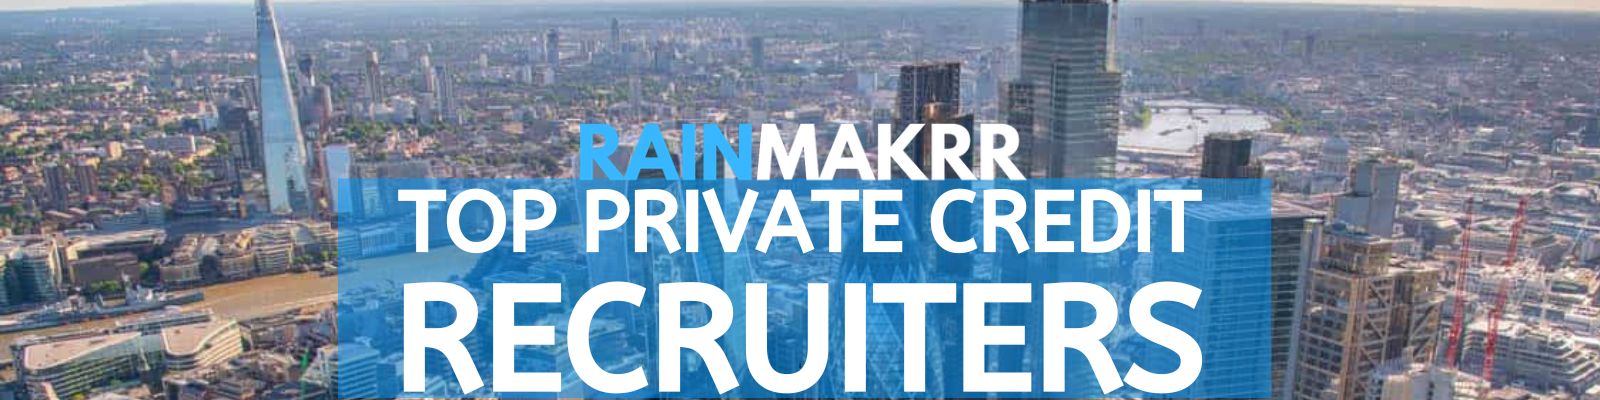 Private Credit Recruiters Private Credit Recruitment Agencies Top Private Credit Recruitment Firms London